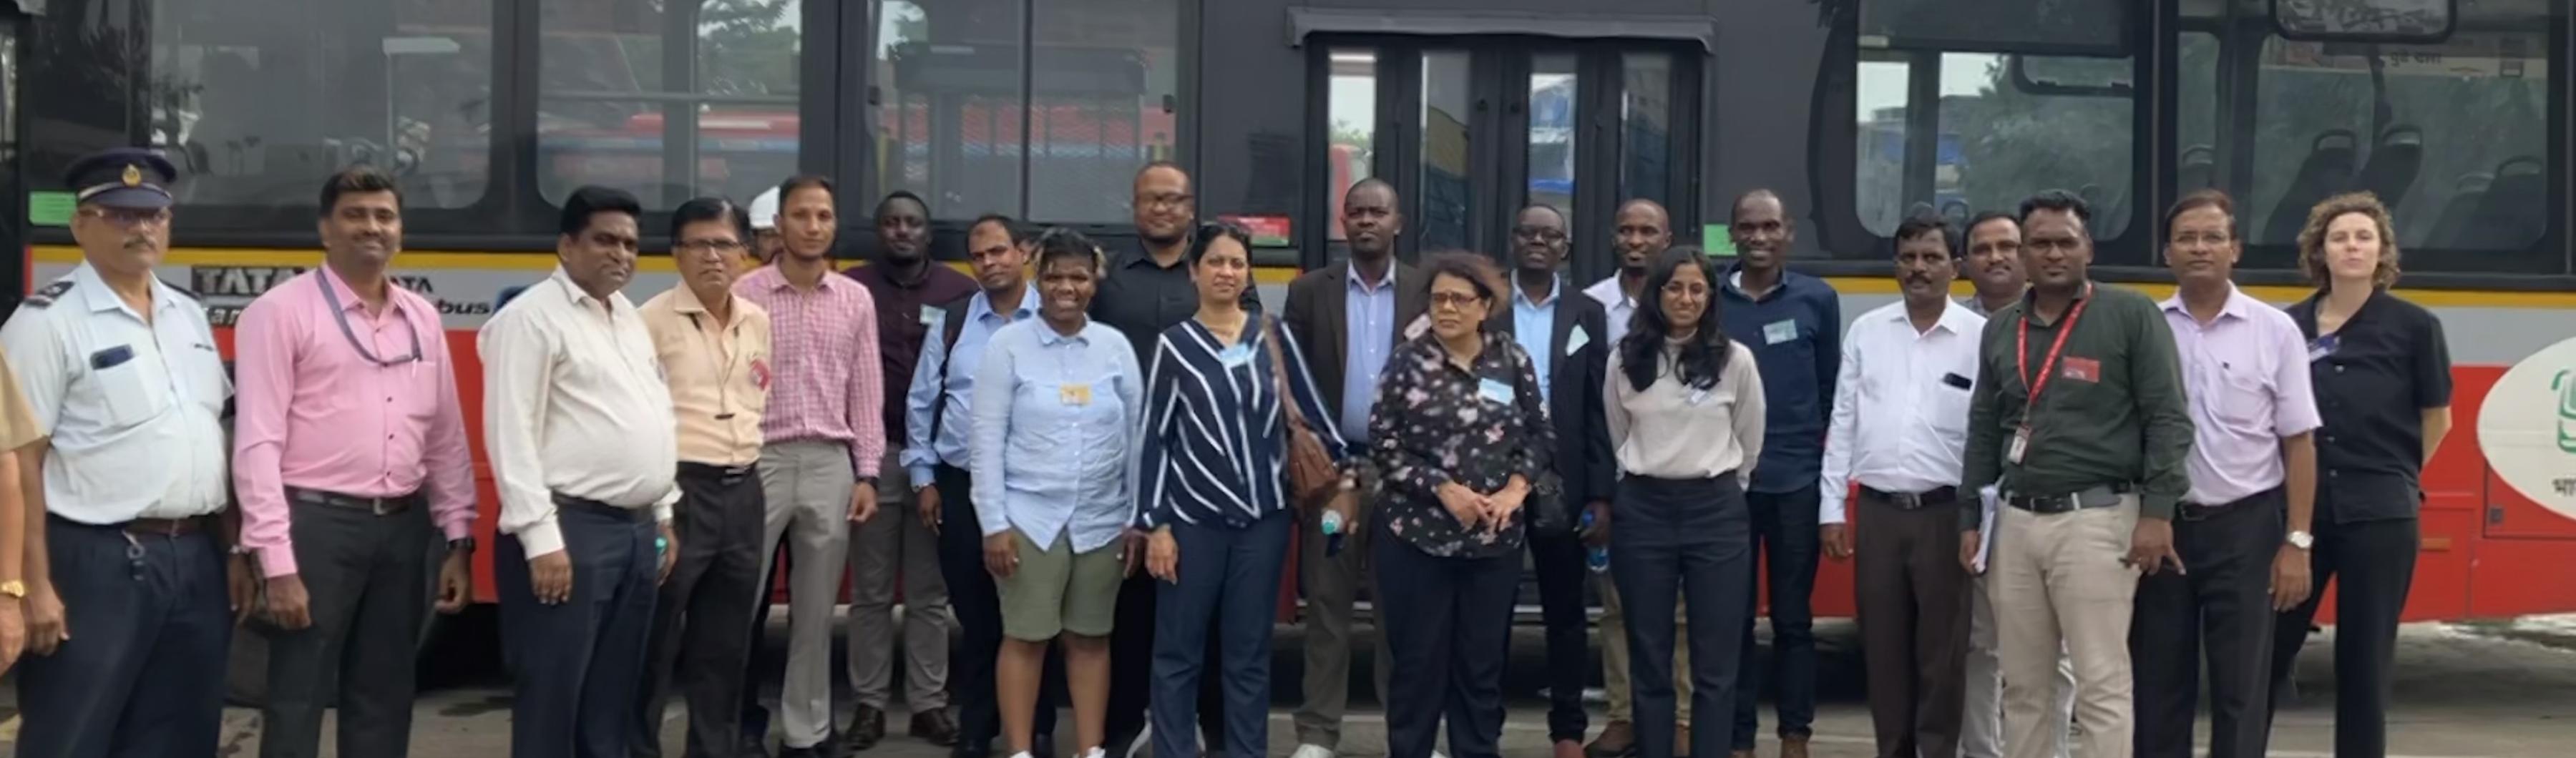 Los participantes en el intercambio Peer to Peer de UrbanShift frente a un autobús de emisiones cero en Bombay.